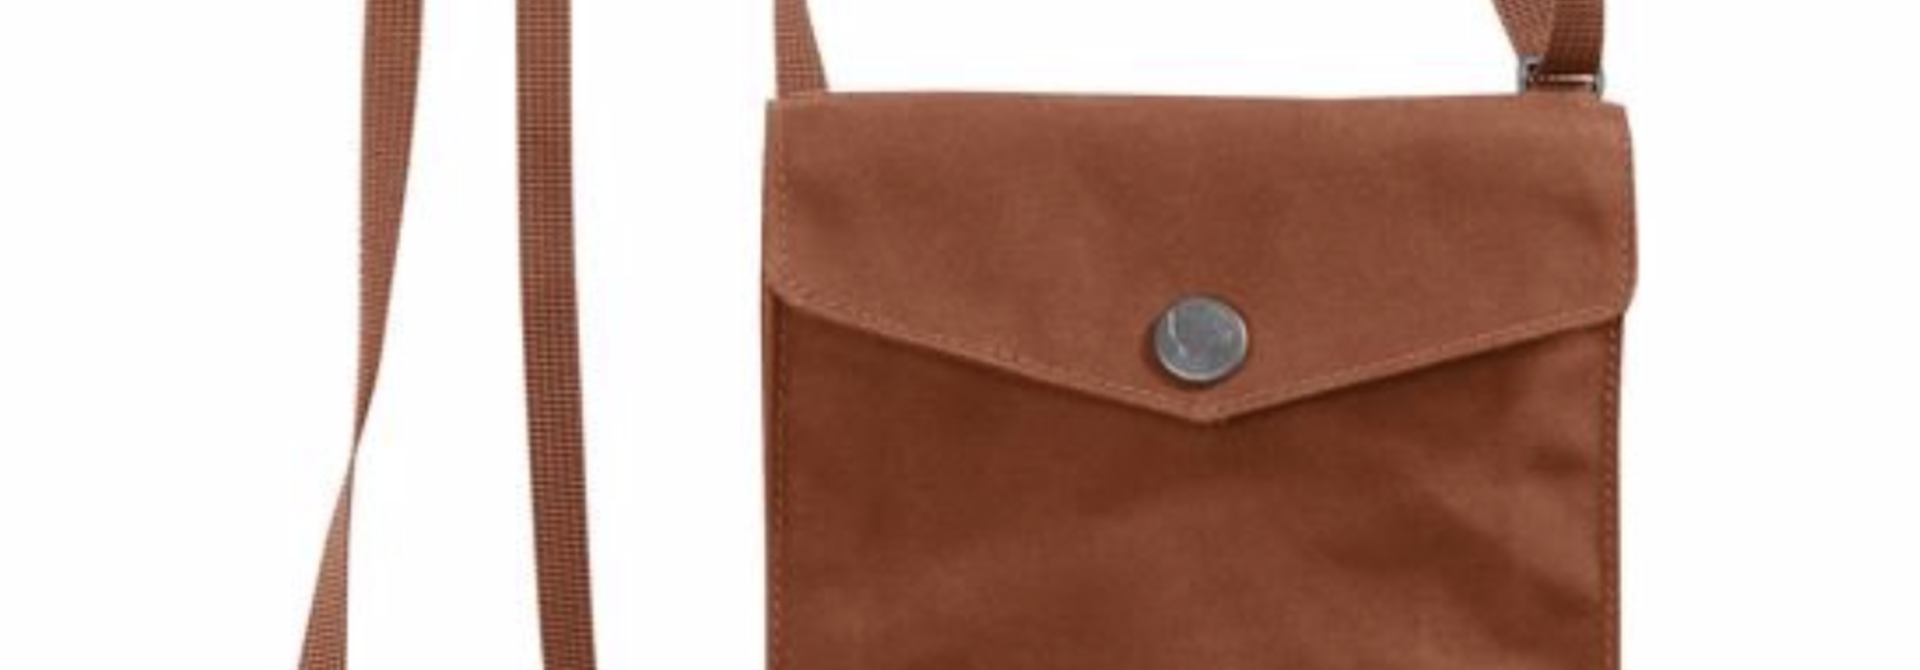 Pocket Bag